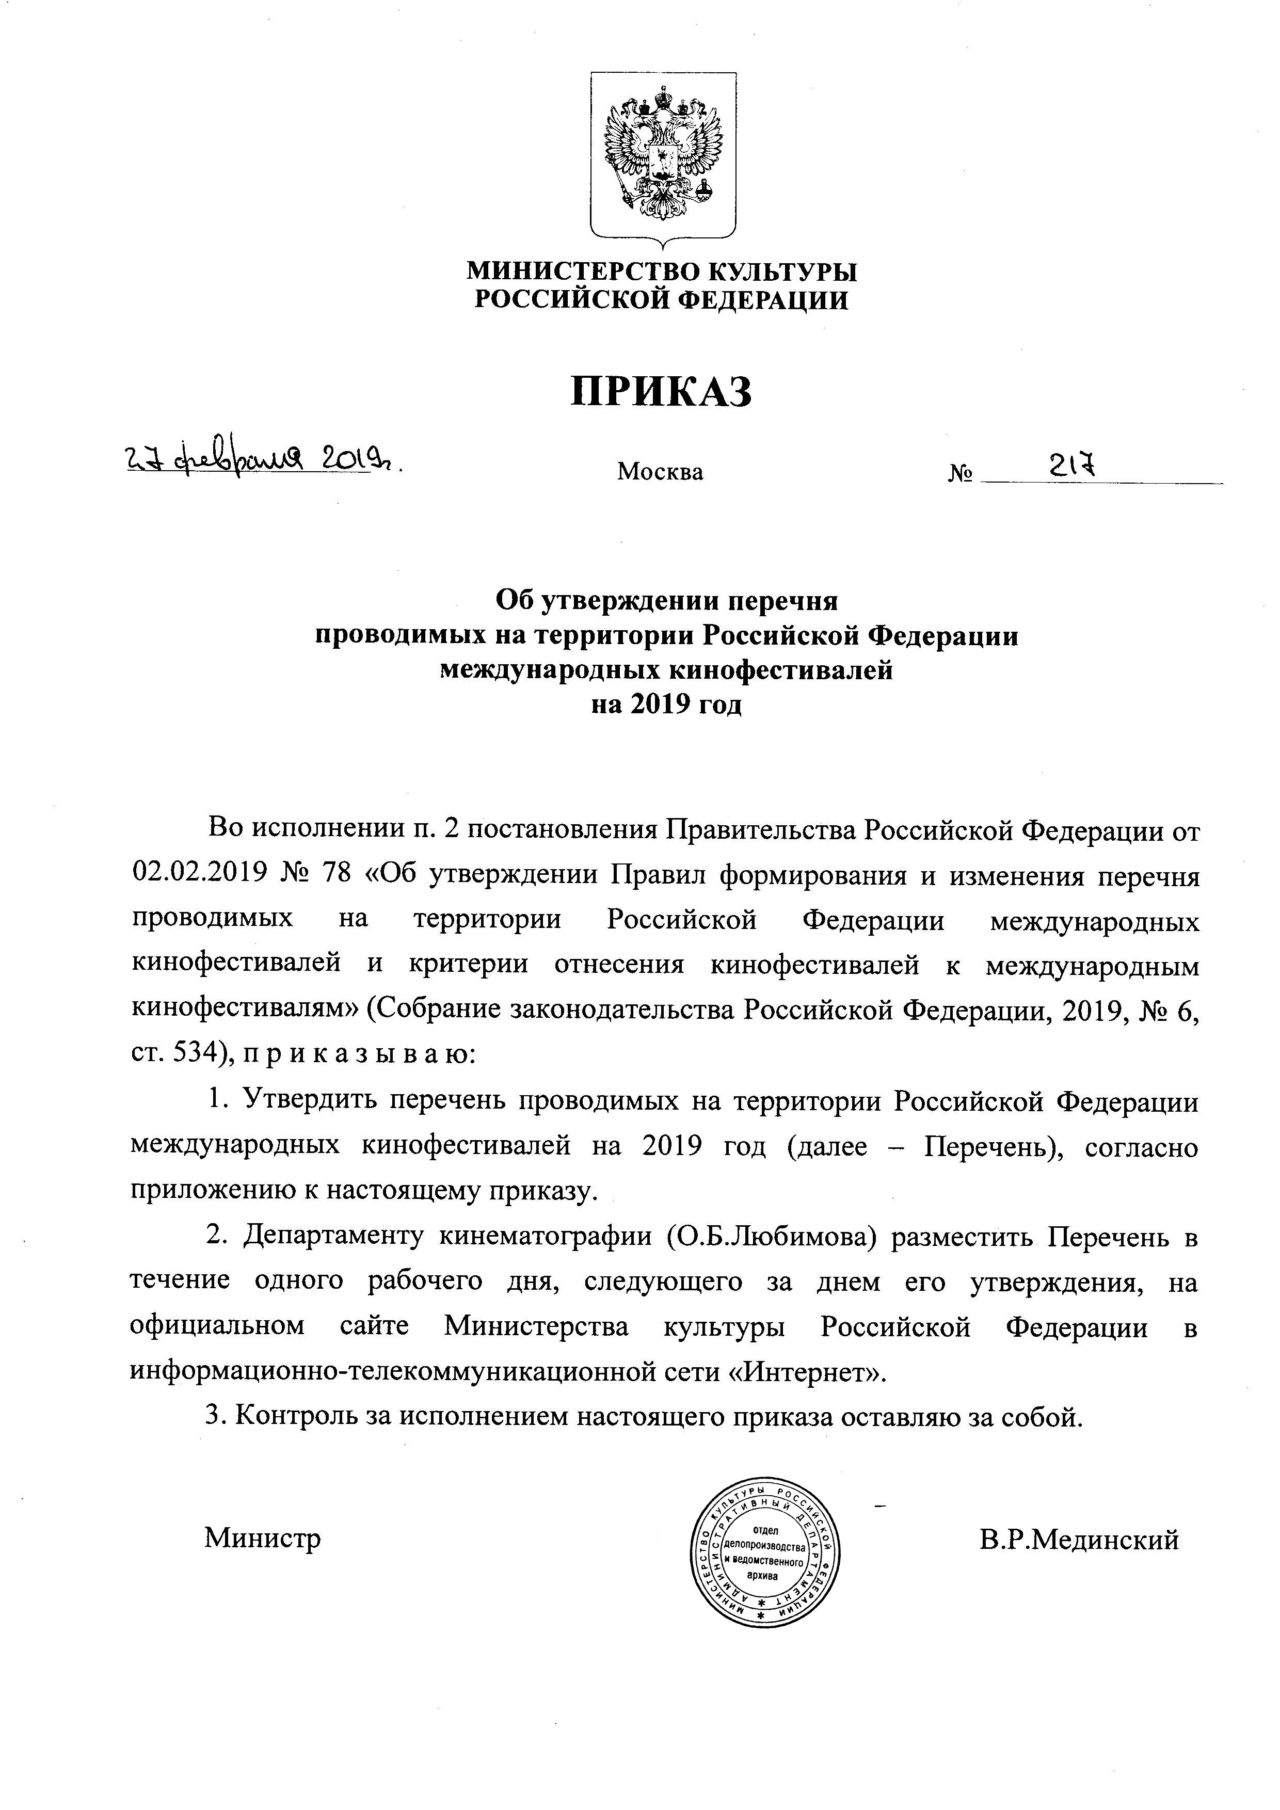 Об утверждении перечня проводимых на территории Российской Федерации международных кинофестивалей на 2019 год